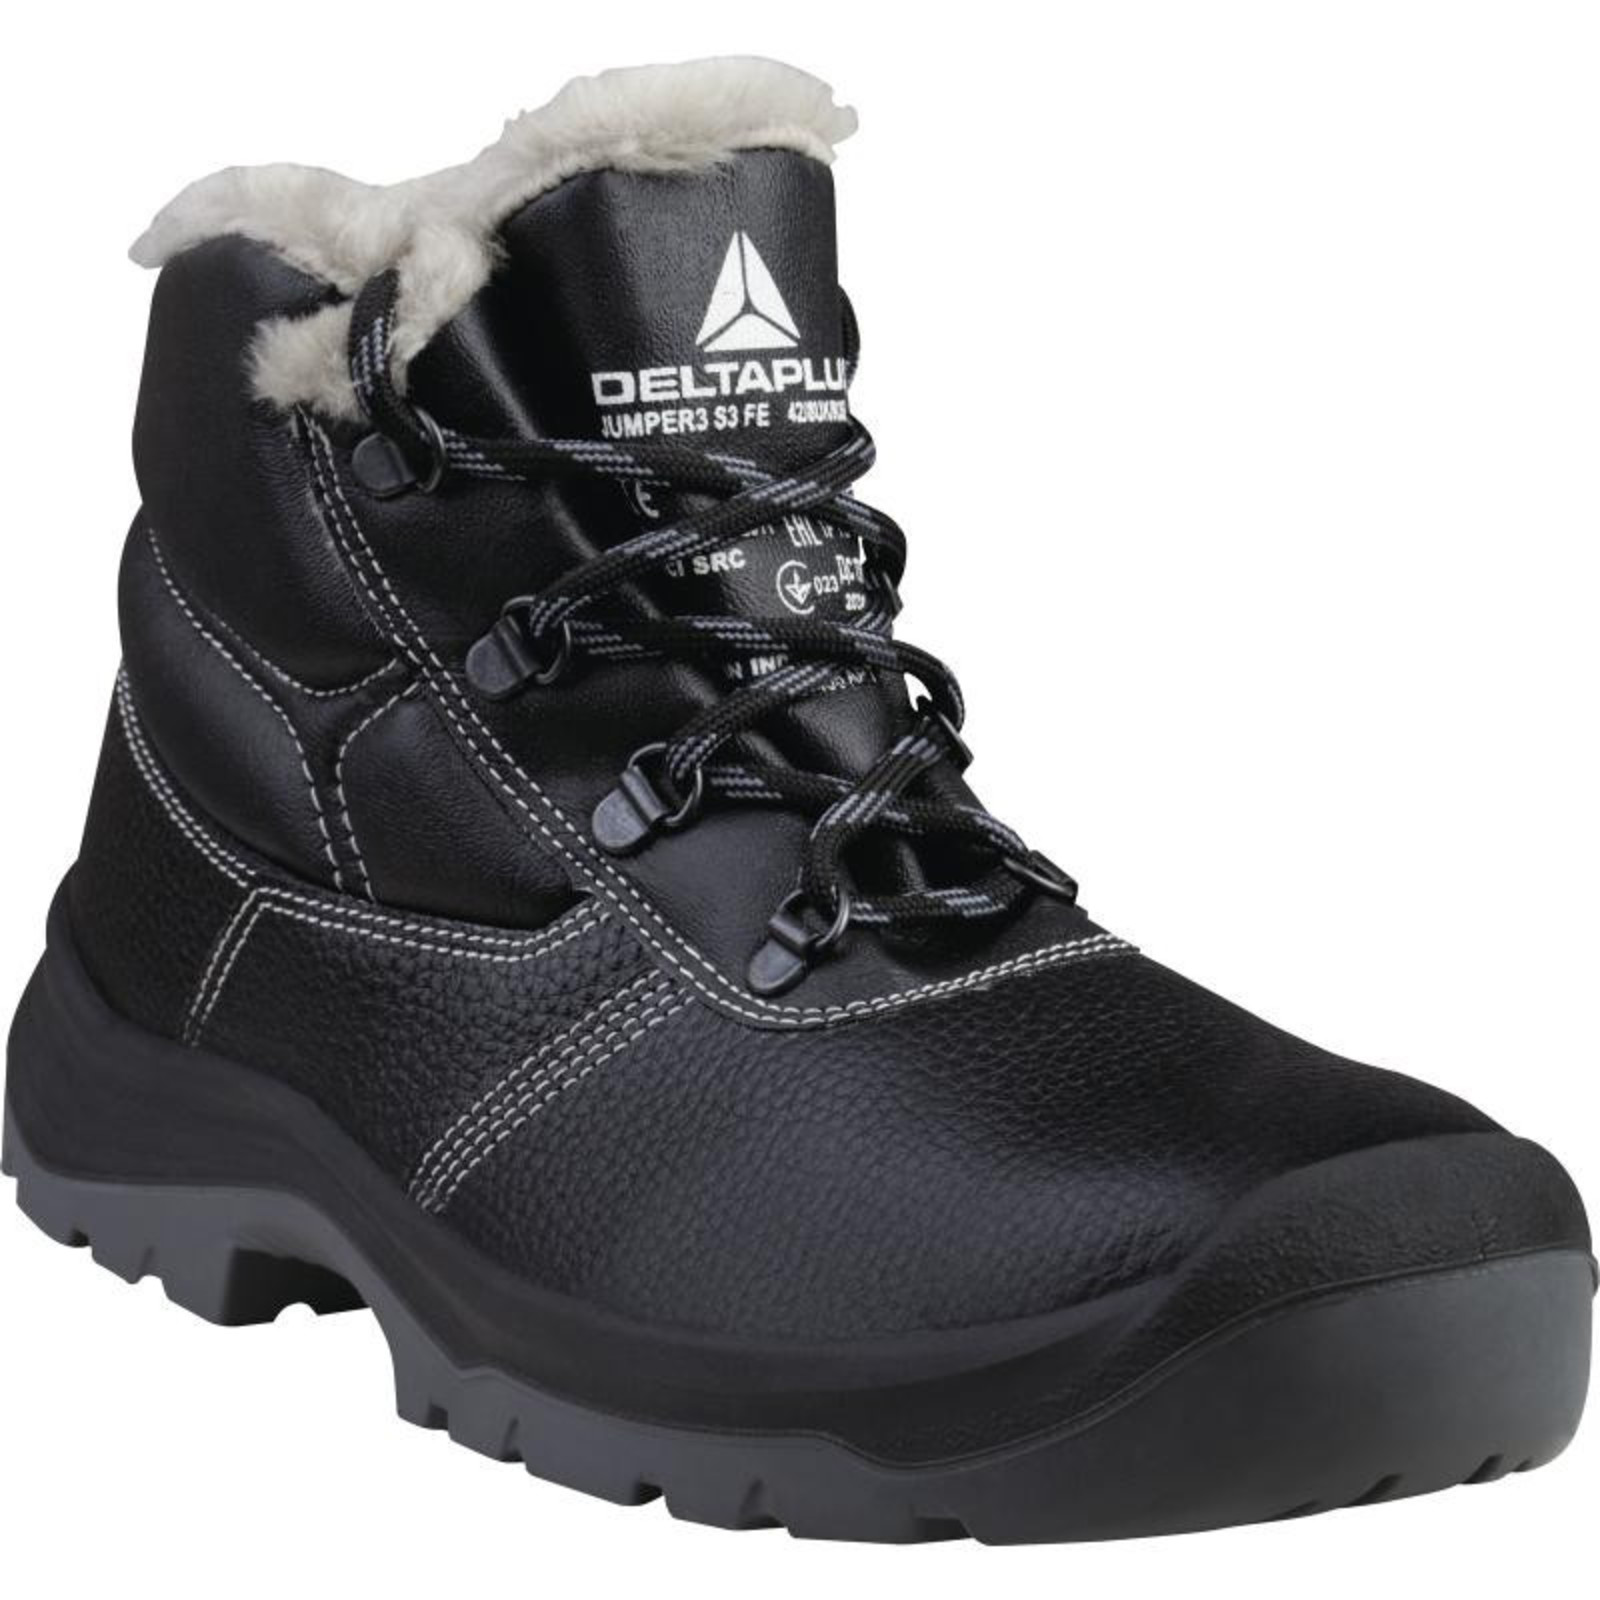 Zimná členková bezpečnostná obuv Delta Plus Jumper3 S3 - veľkosť: 38, farba: čierna